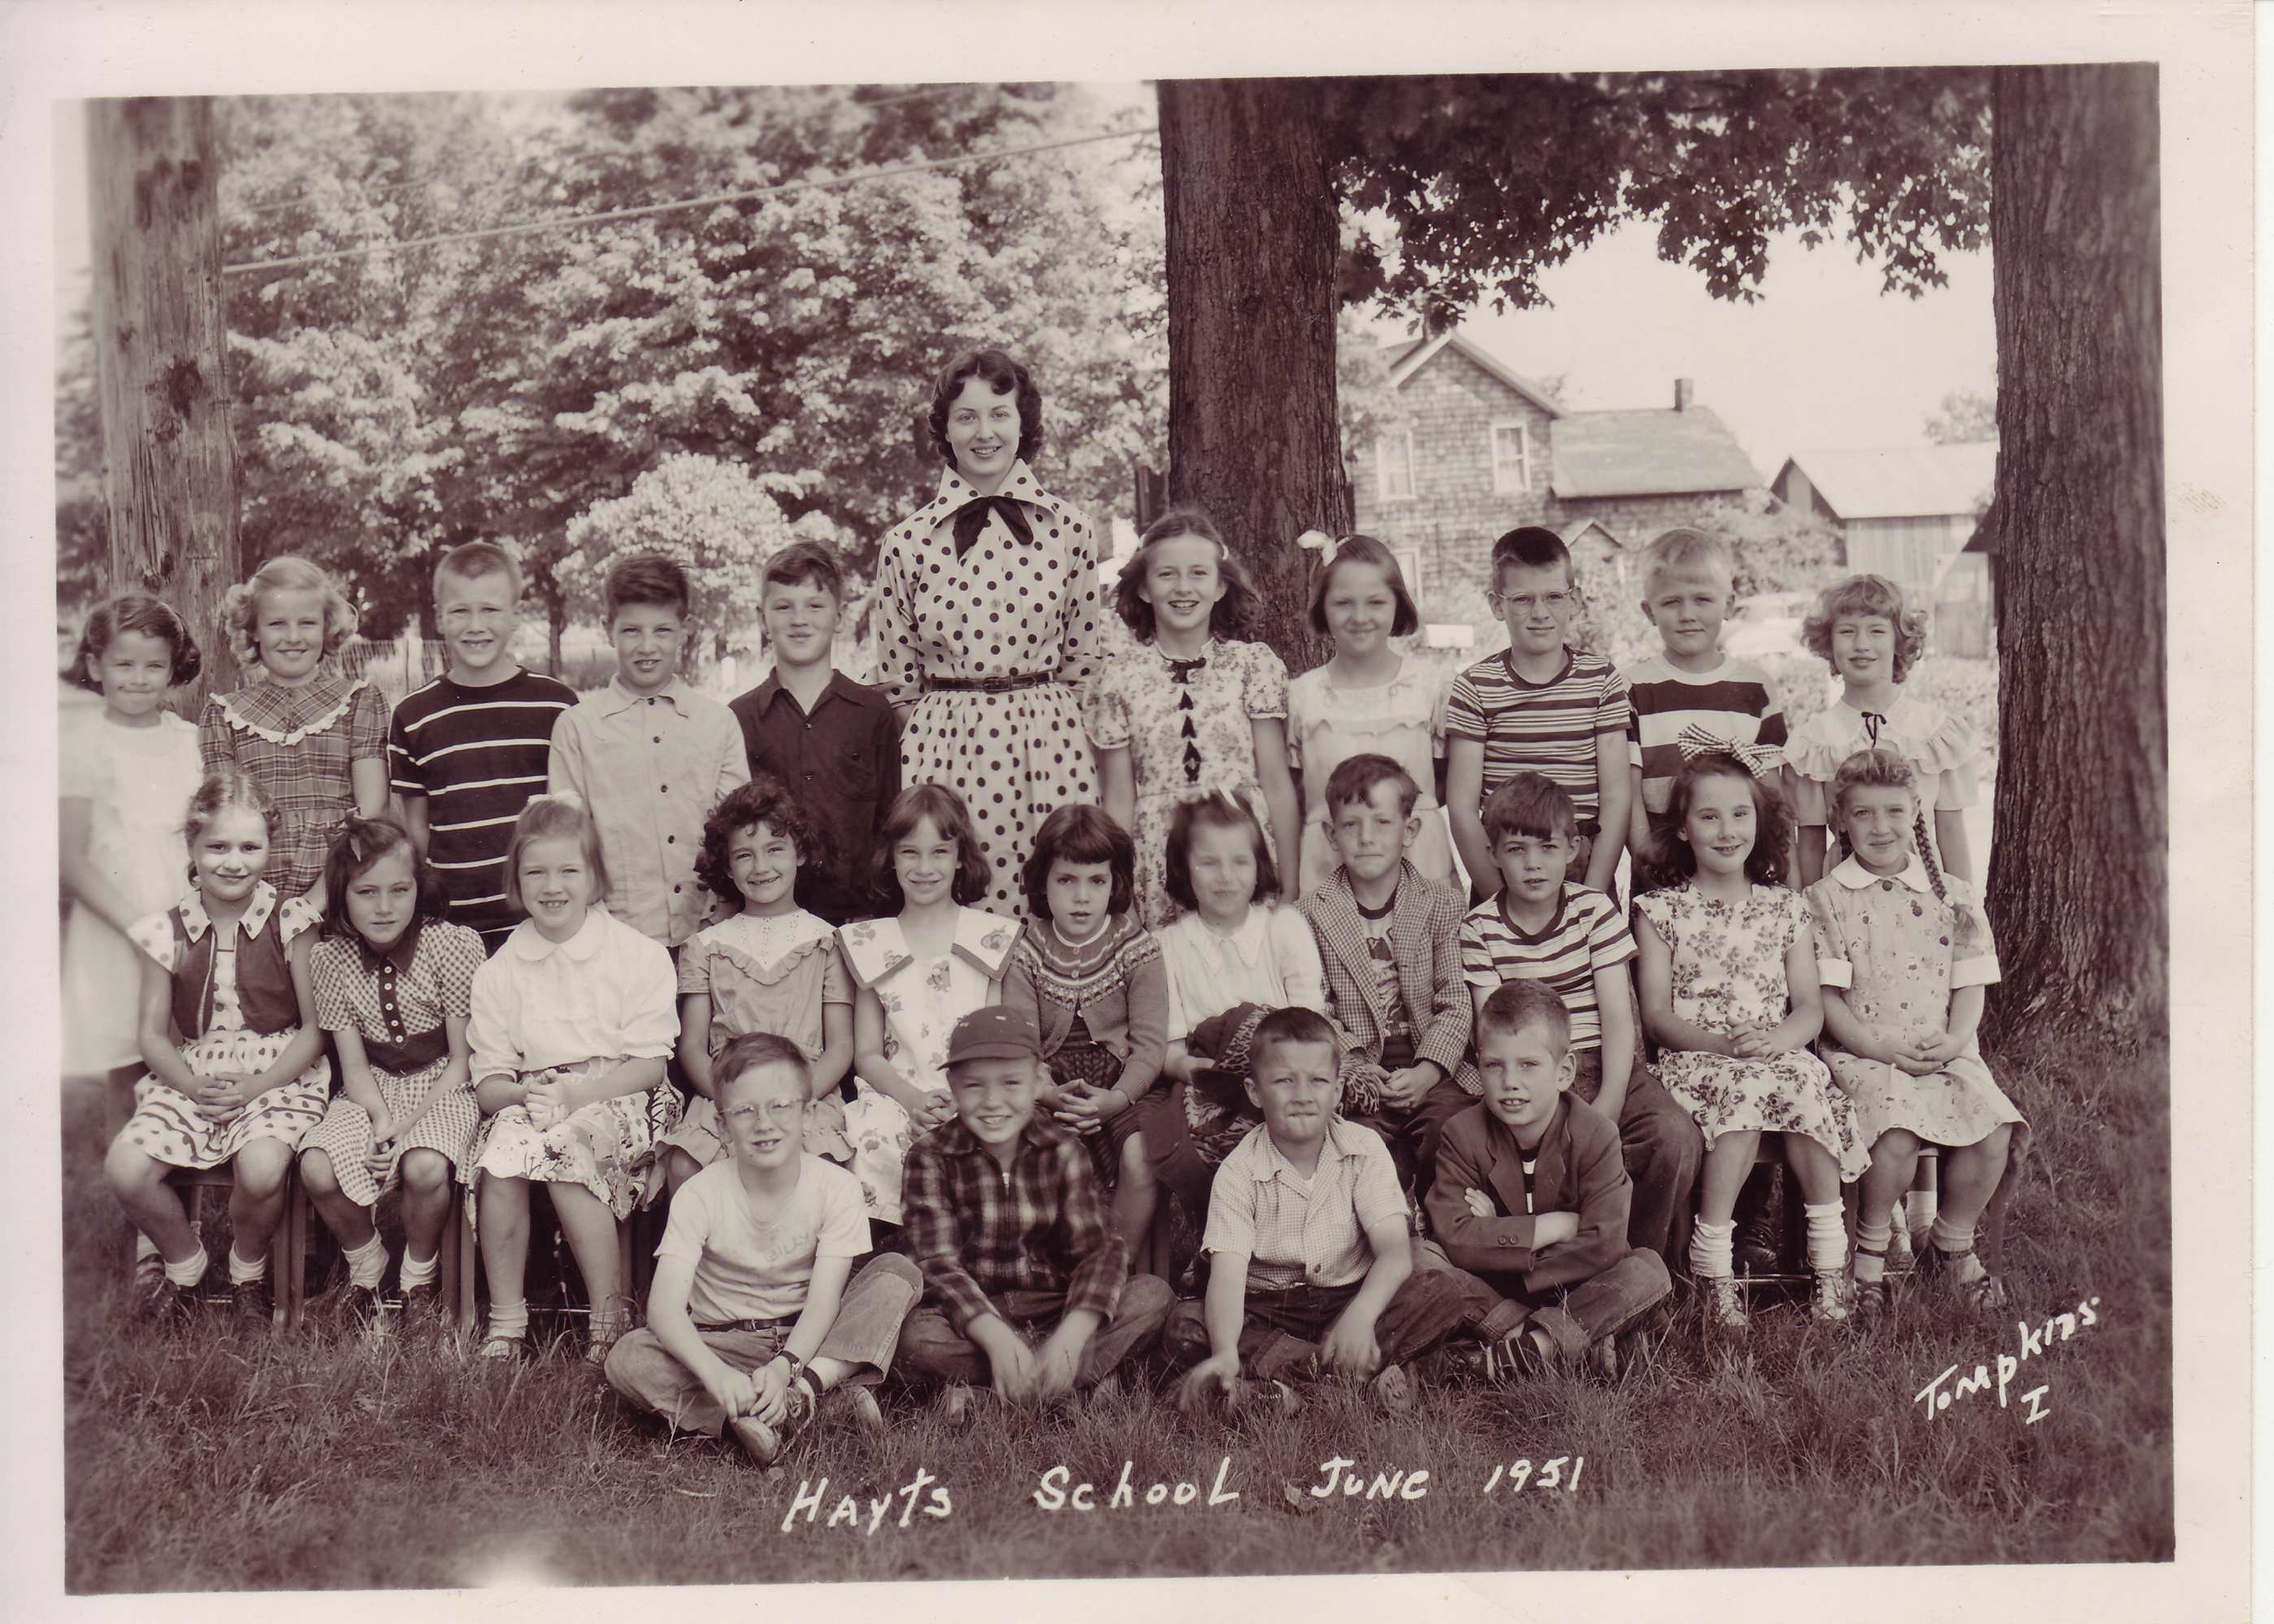 Hayt School, Grades 1-3 in June 1951